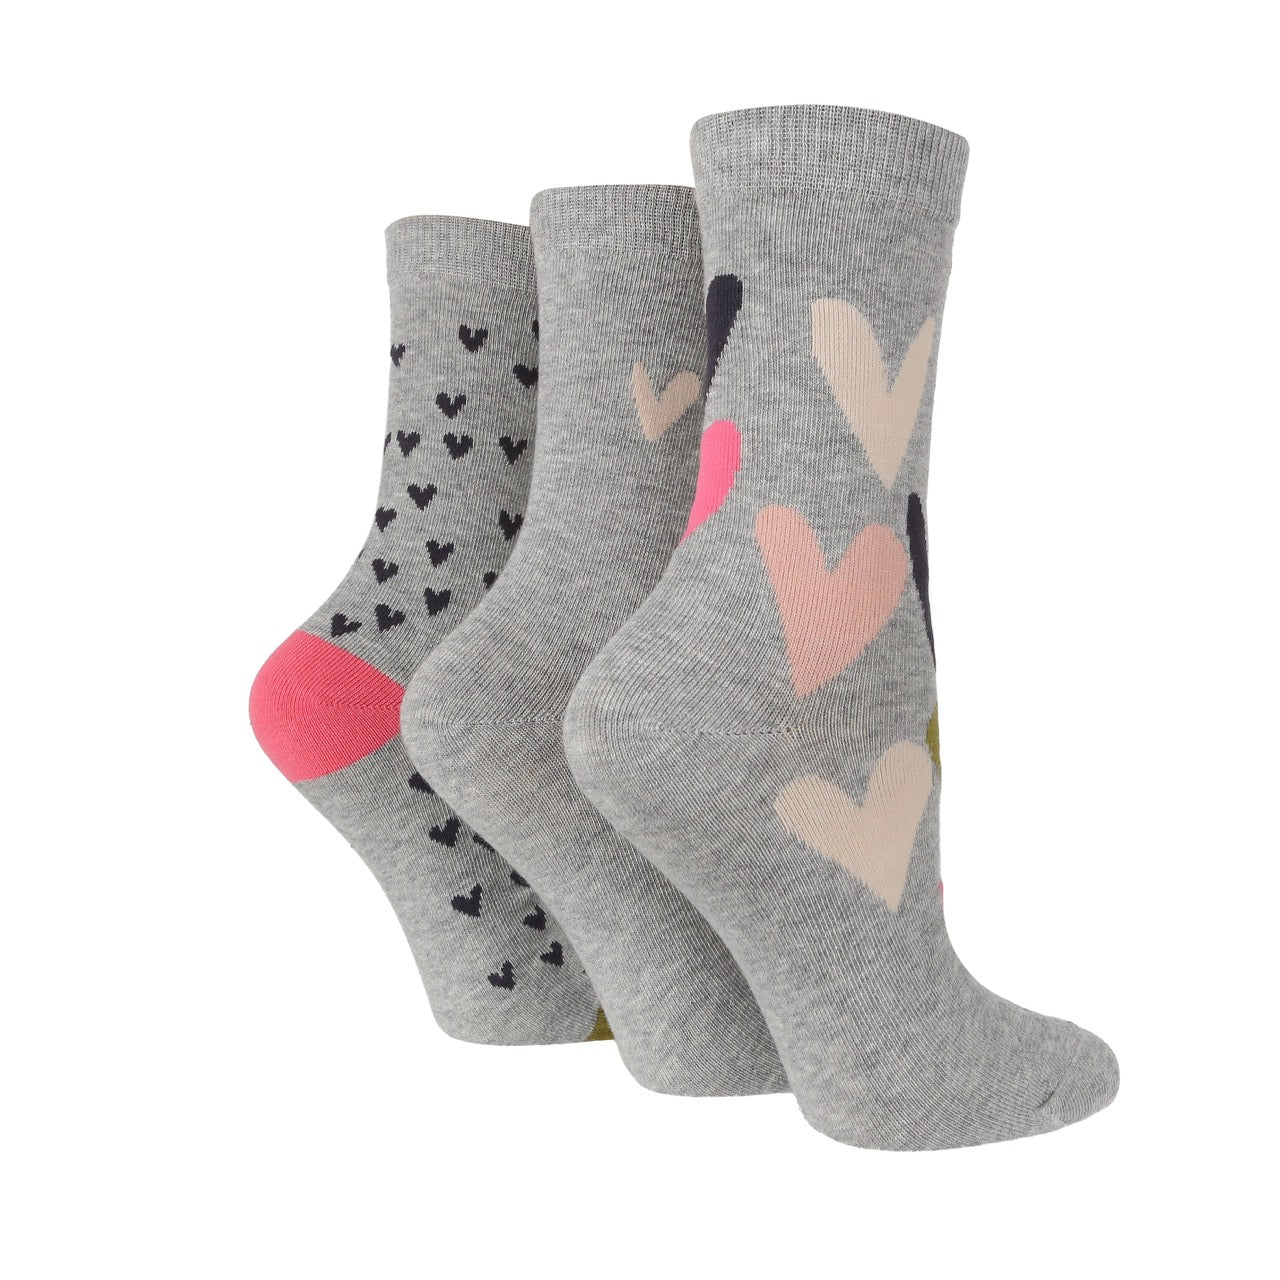 CAROLINE GARDNER 3PK Gift Boxed Cotton Socks - Women's